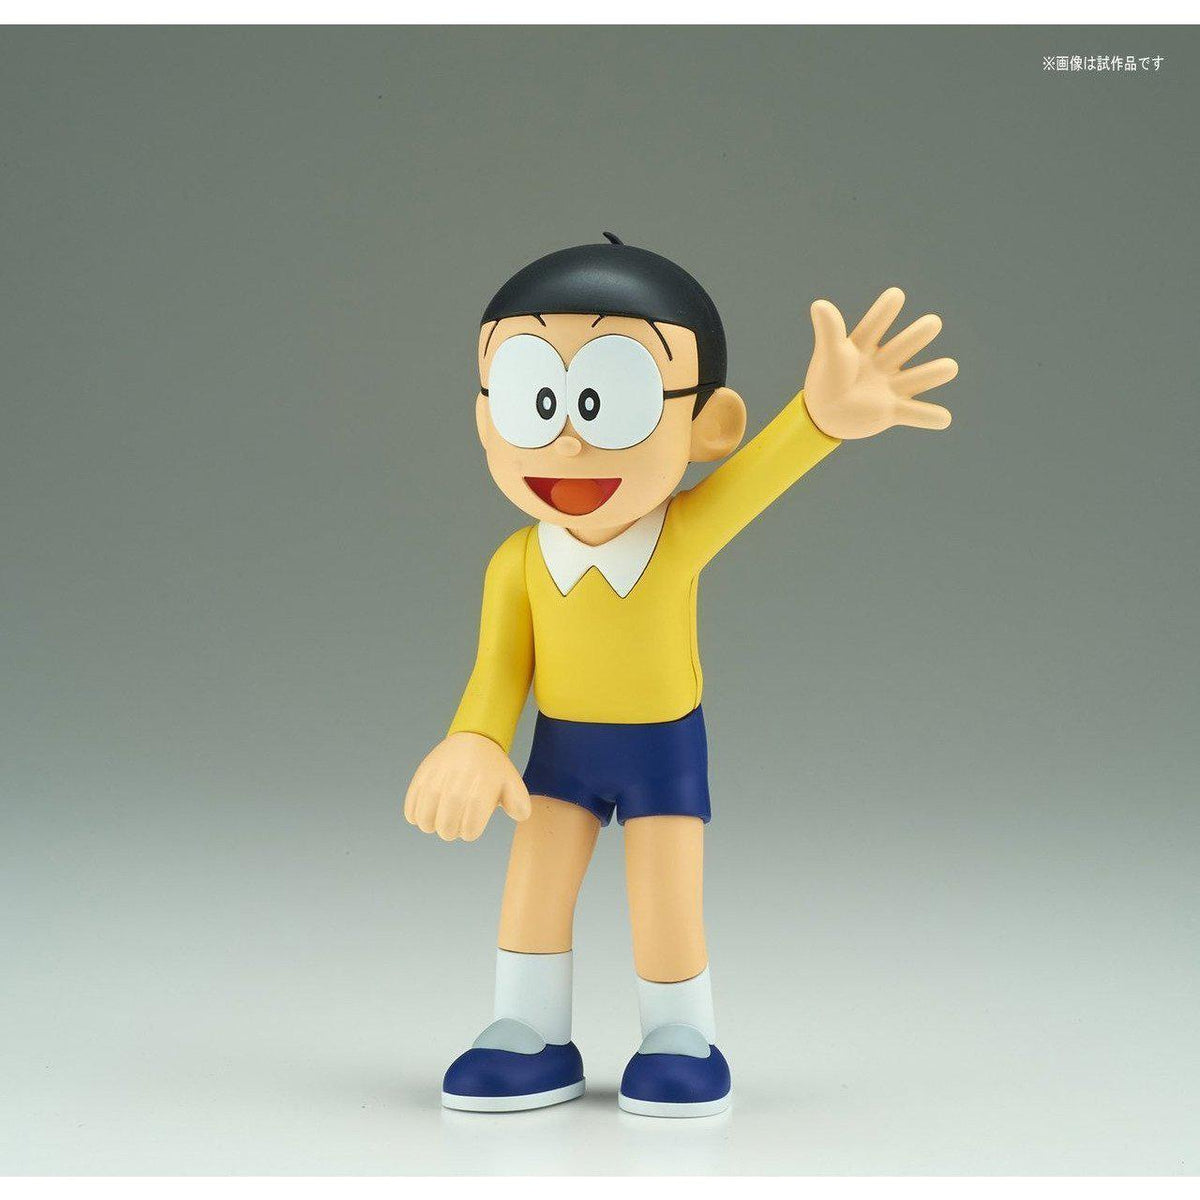 Doraemon Figure-rise Mechanics &quot;Time Machine&quot; Secret Gadget of Doraemon-Bandai-Ace Cards &amp; Collectibles